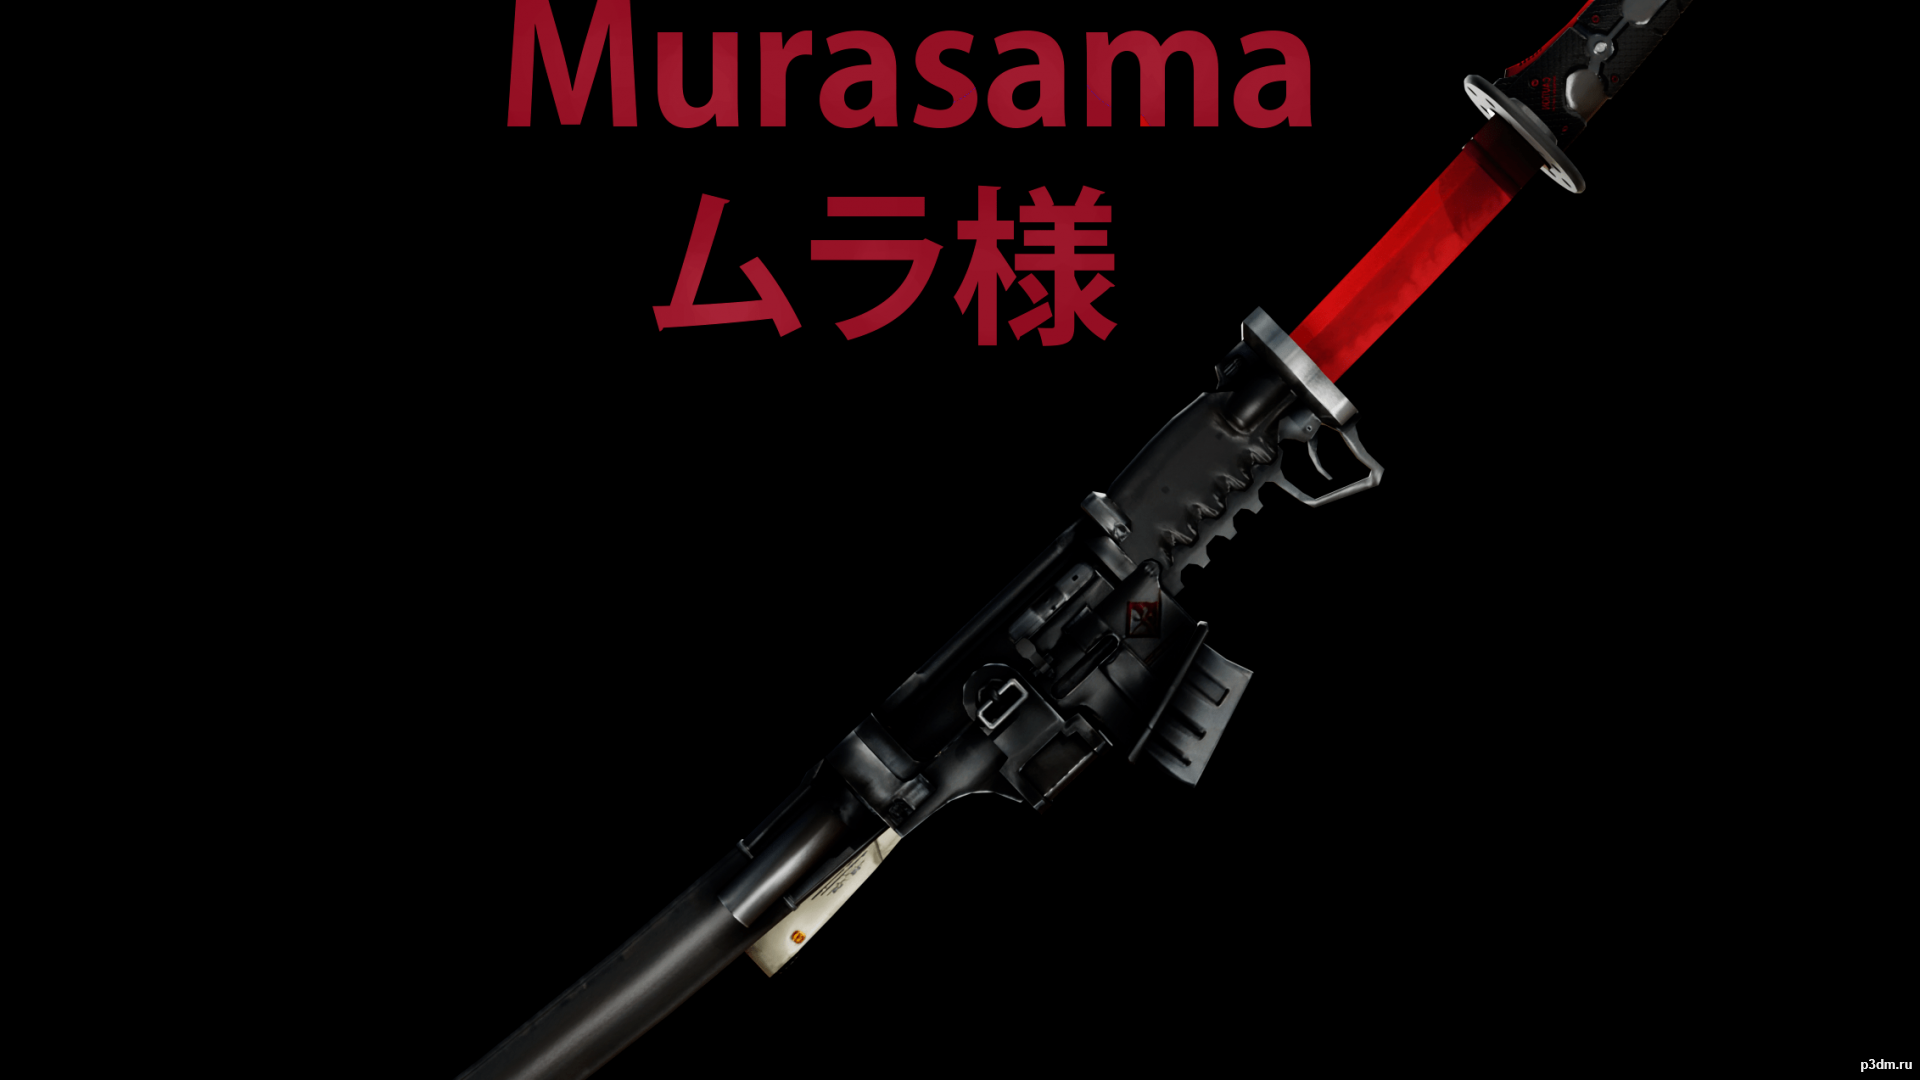 Murasama » Pack 3D models